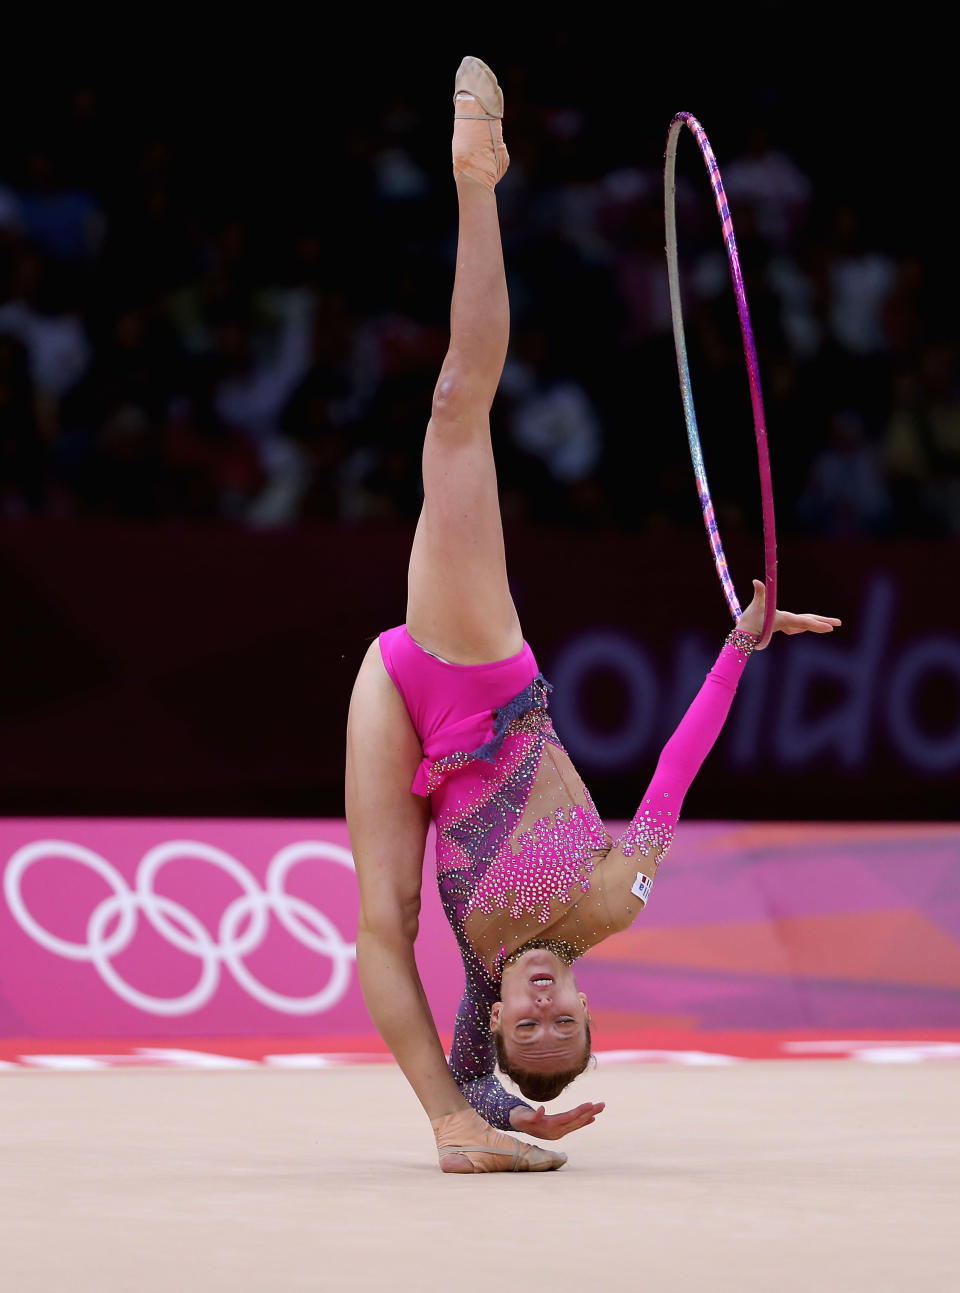 Olympics Day 13 - Gymnastics - Rhythmic